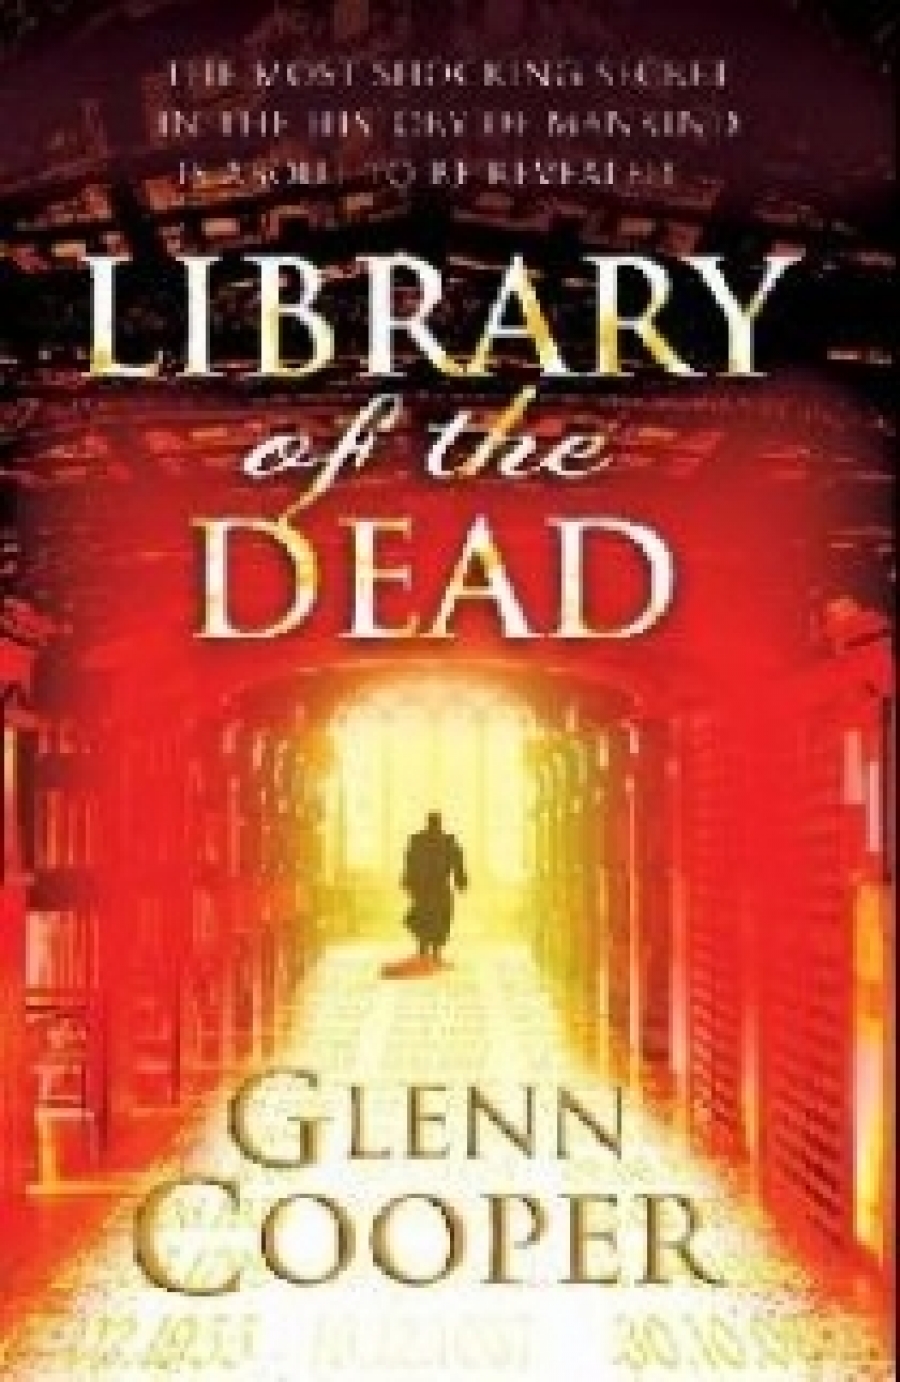 Cooper, Glenn Library of the dead 